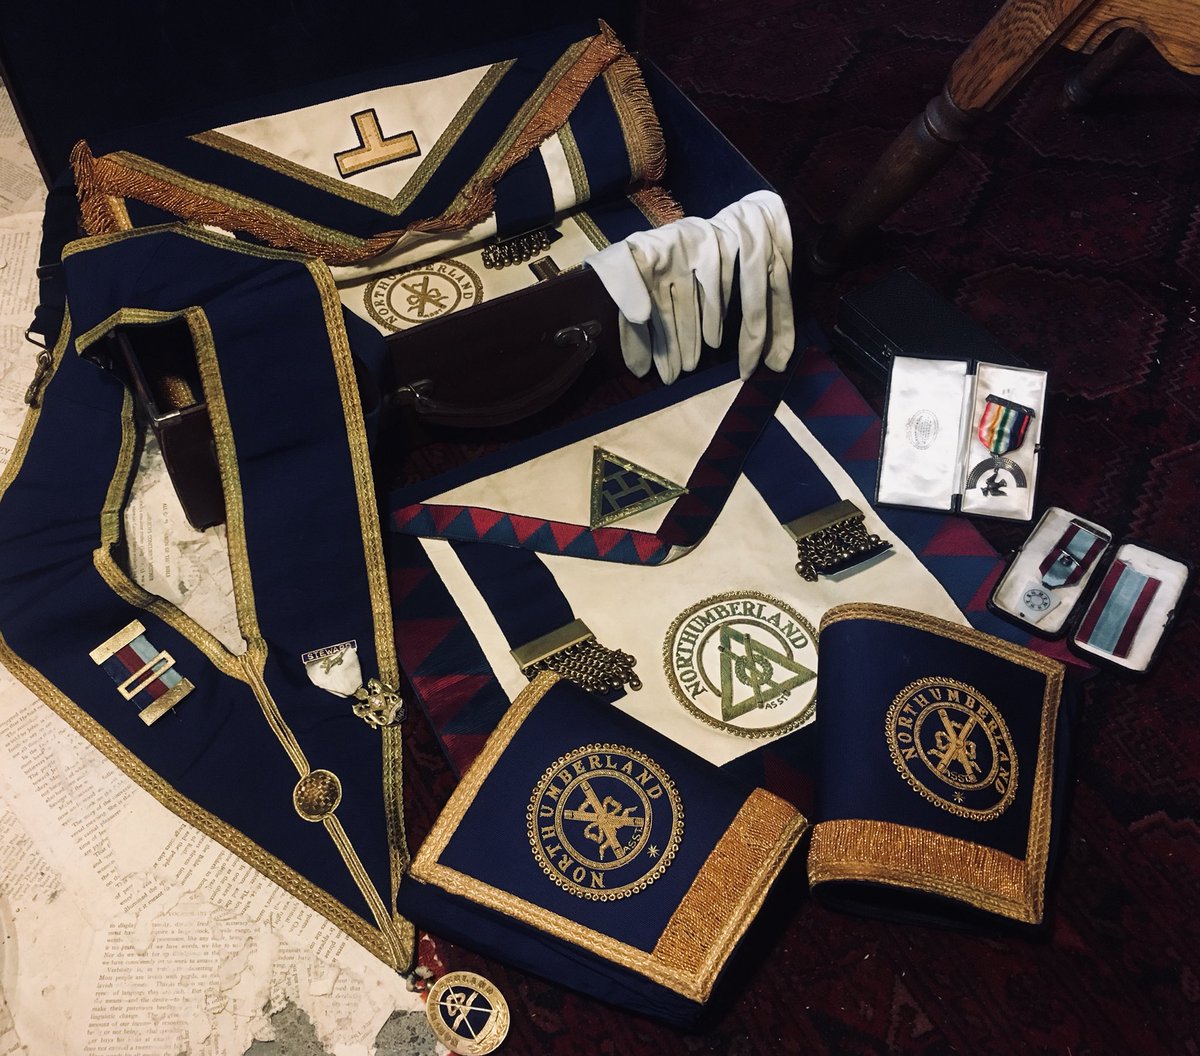 Lecurio フリーメイソンの会員具 1940 60 Uk イギリスのグランドロッジに所属していた会員の儀式用正装 エプロン カフス カラー 手袋 と会員証 勲章 書類などです 専用のイニシャル入りの アタッシュケースに一式揃っている非常興味深い珍しいアイテム